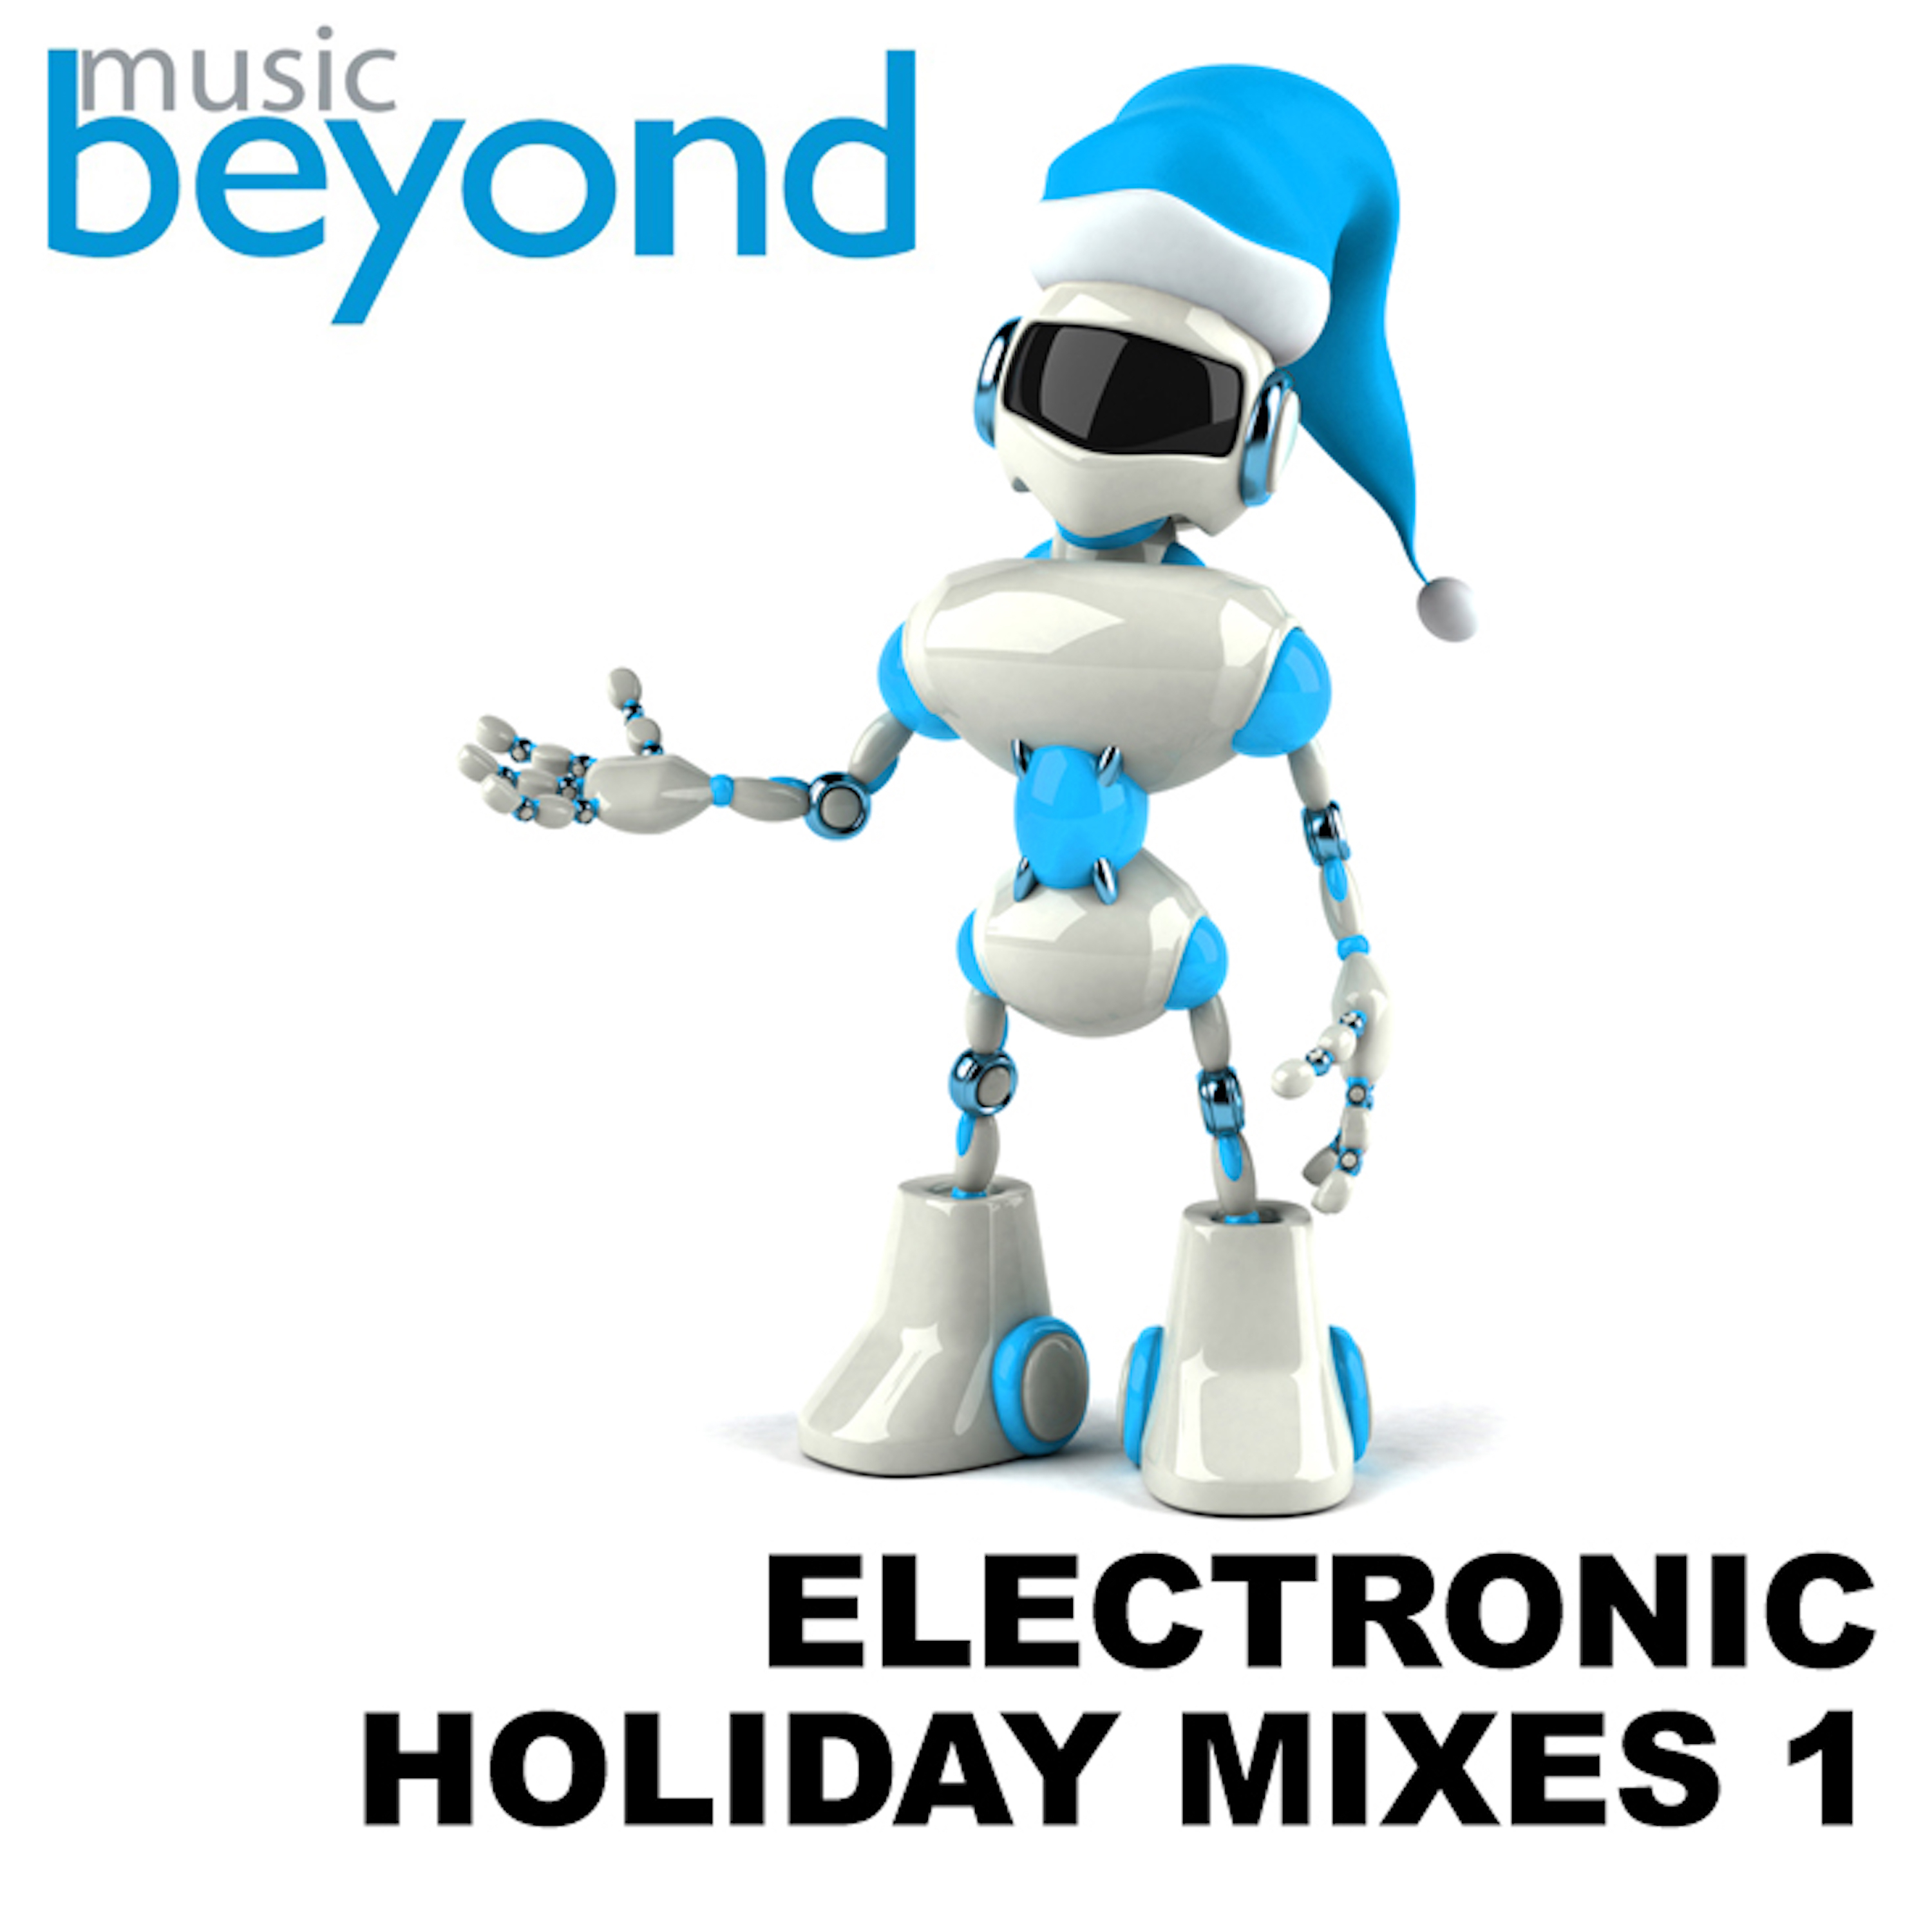 Electronic Holiday